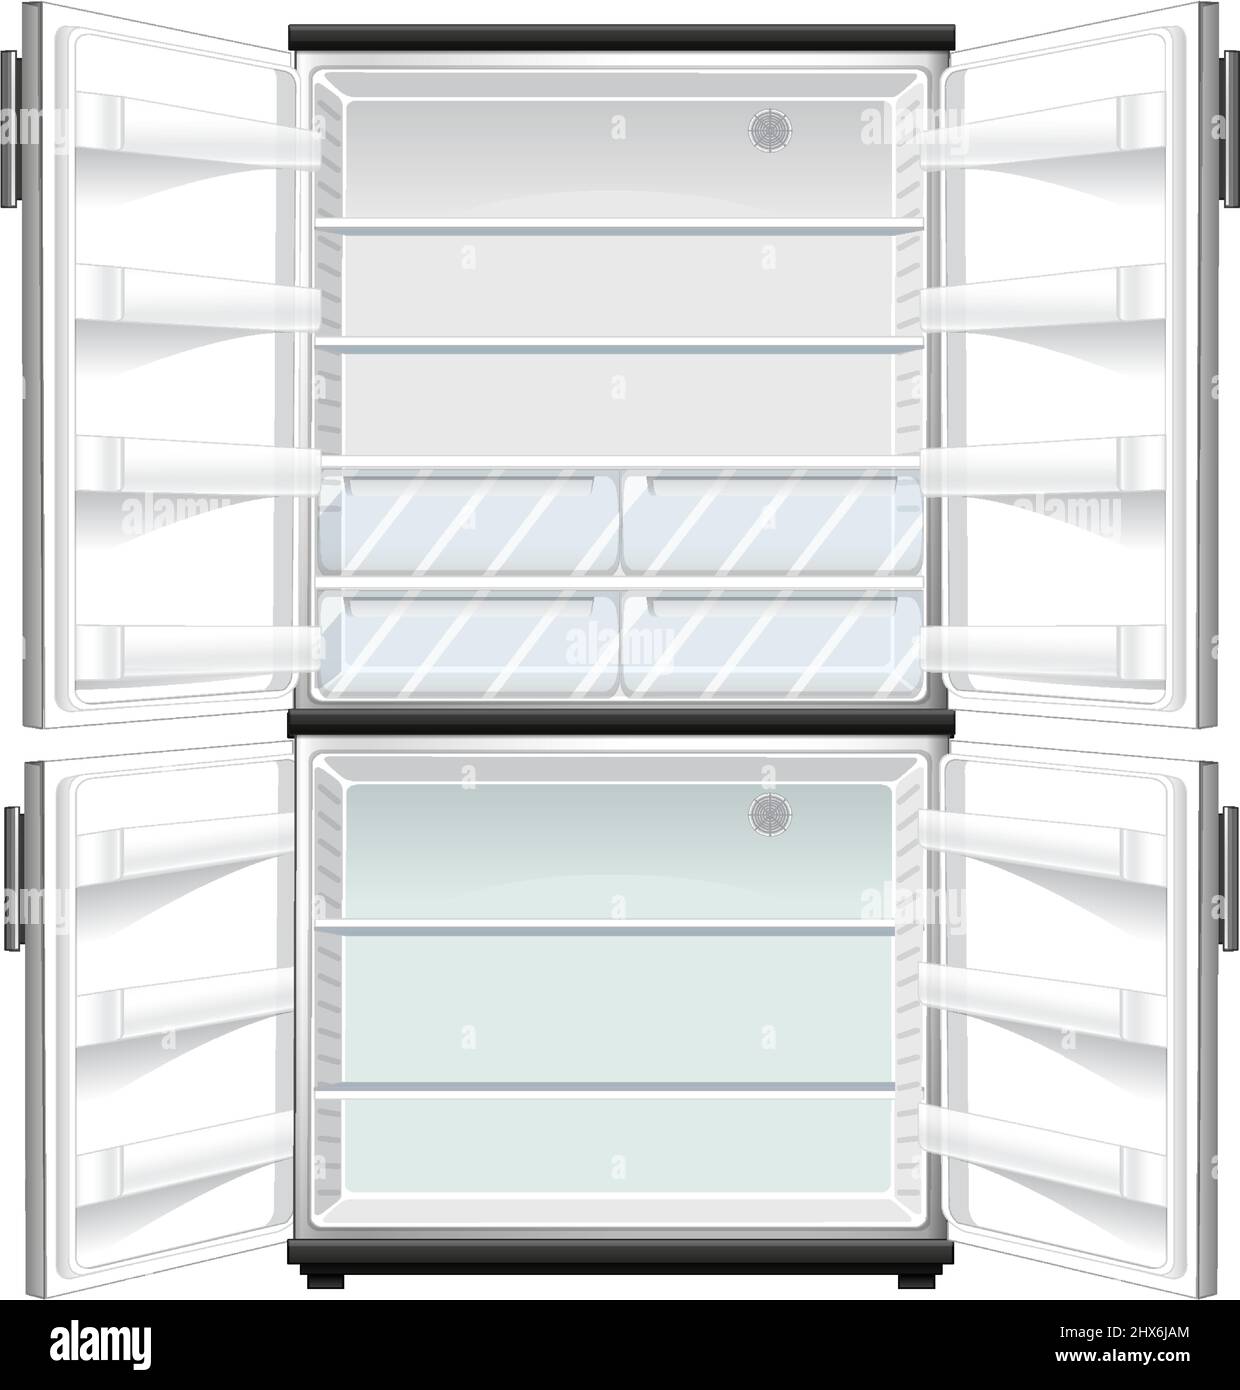 Refridgerator with opened door illustration Stock Vector